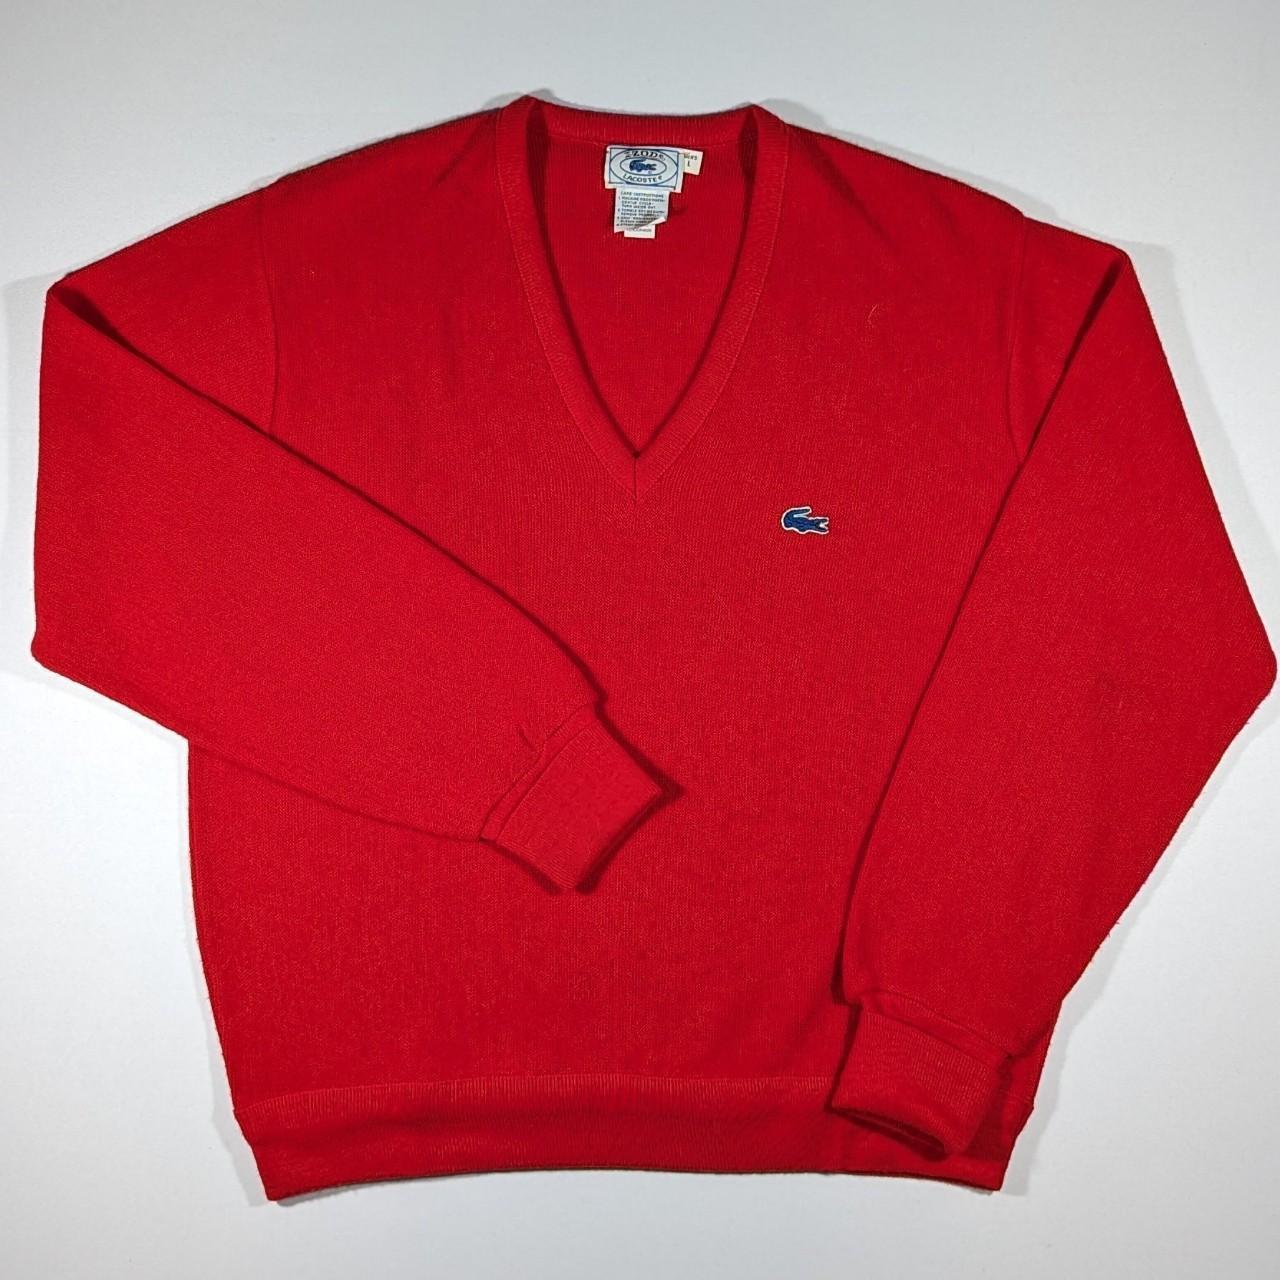 Vintage Izod Lacoste V-Neck Red Sweater Blue... - Depop